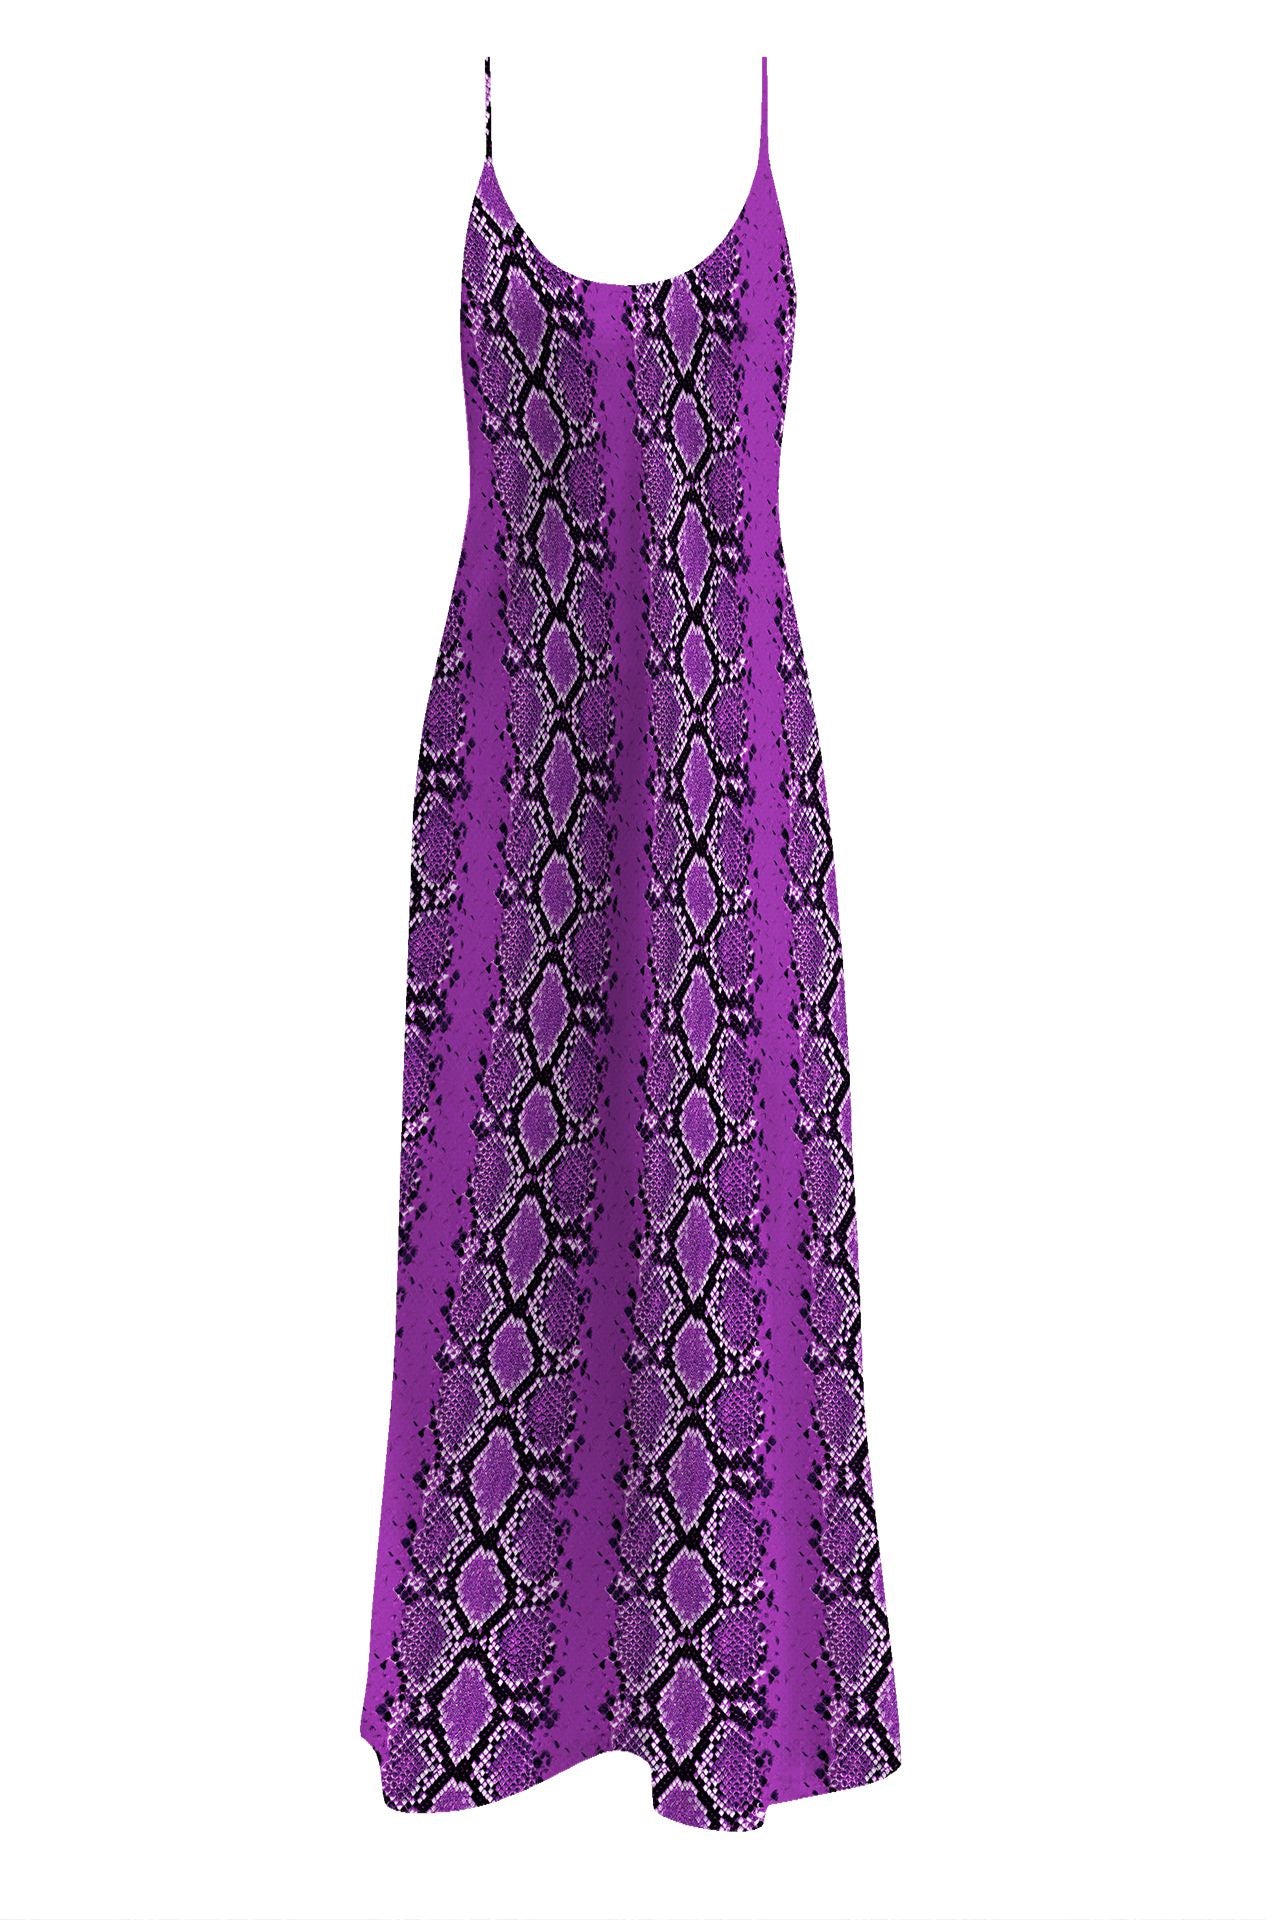 "Kyle X Shahida" "floor length slip dress" "purple silk slip dress" "long slips for dresses"